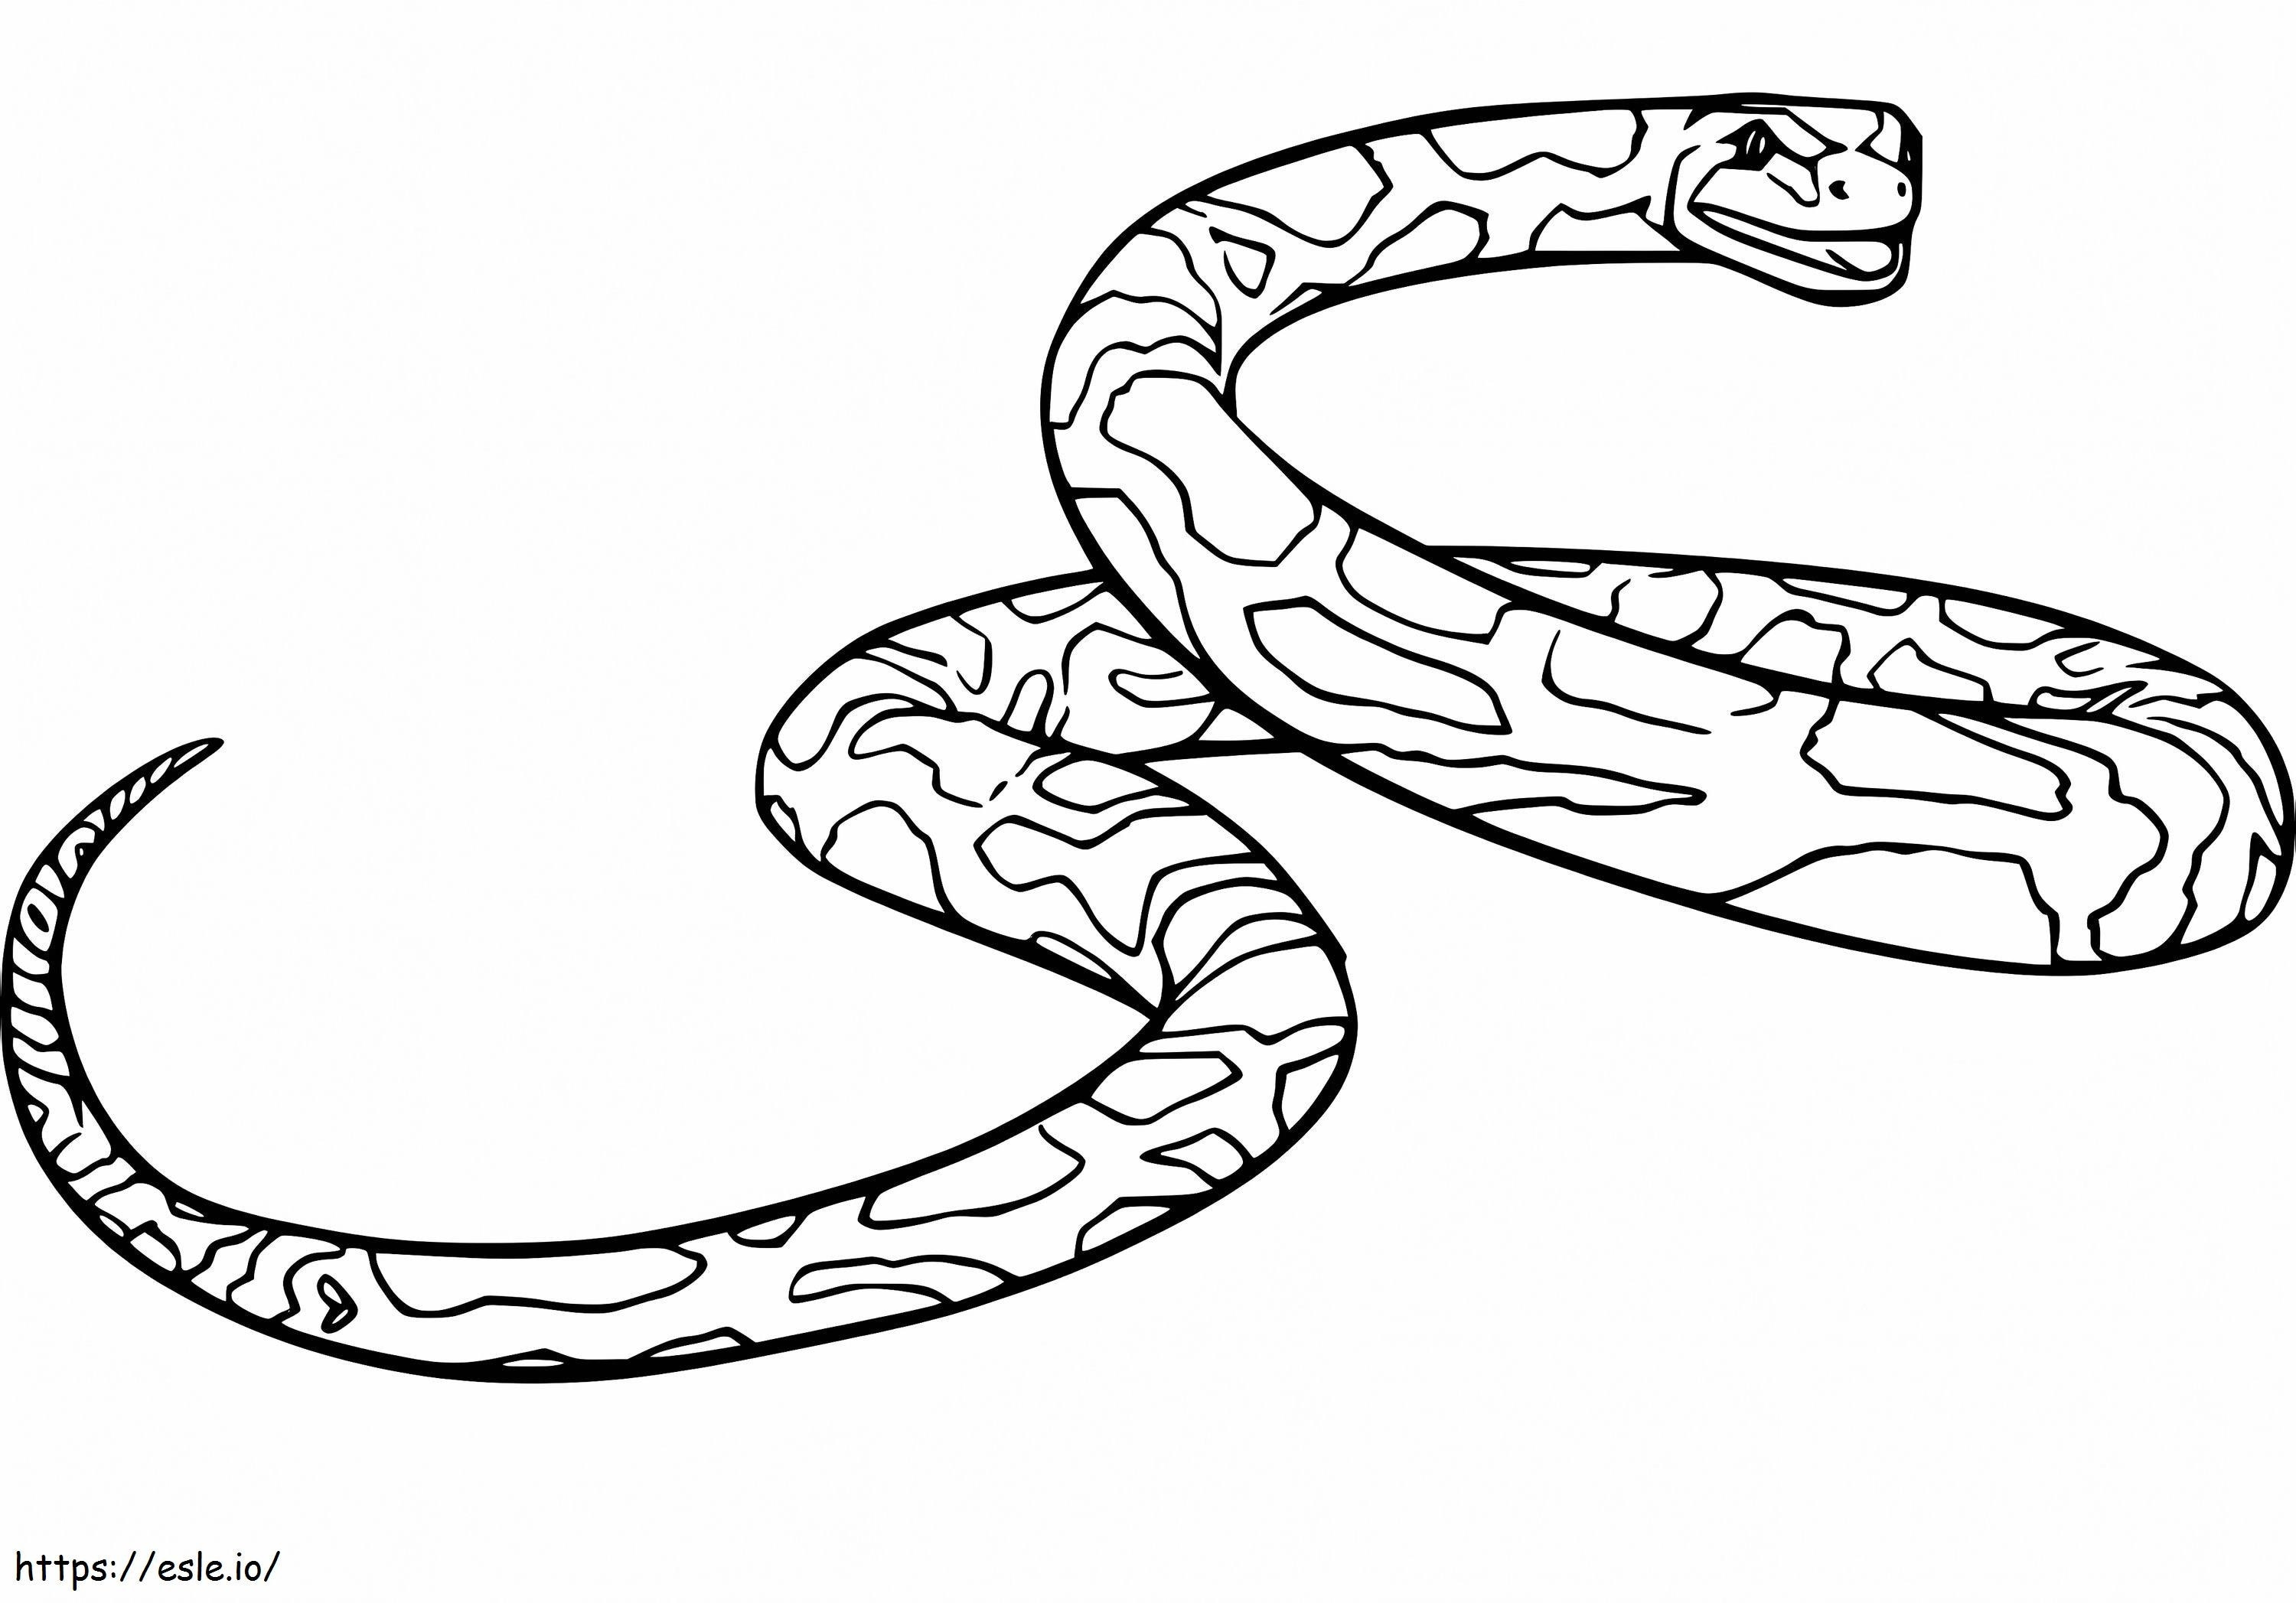 Normal Anaconda coloring page